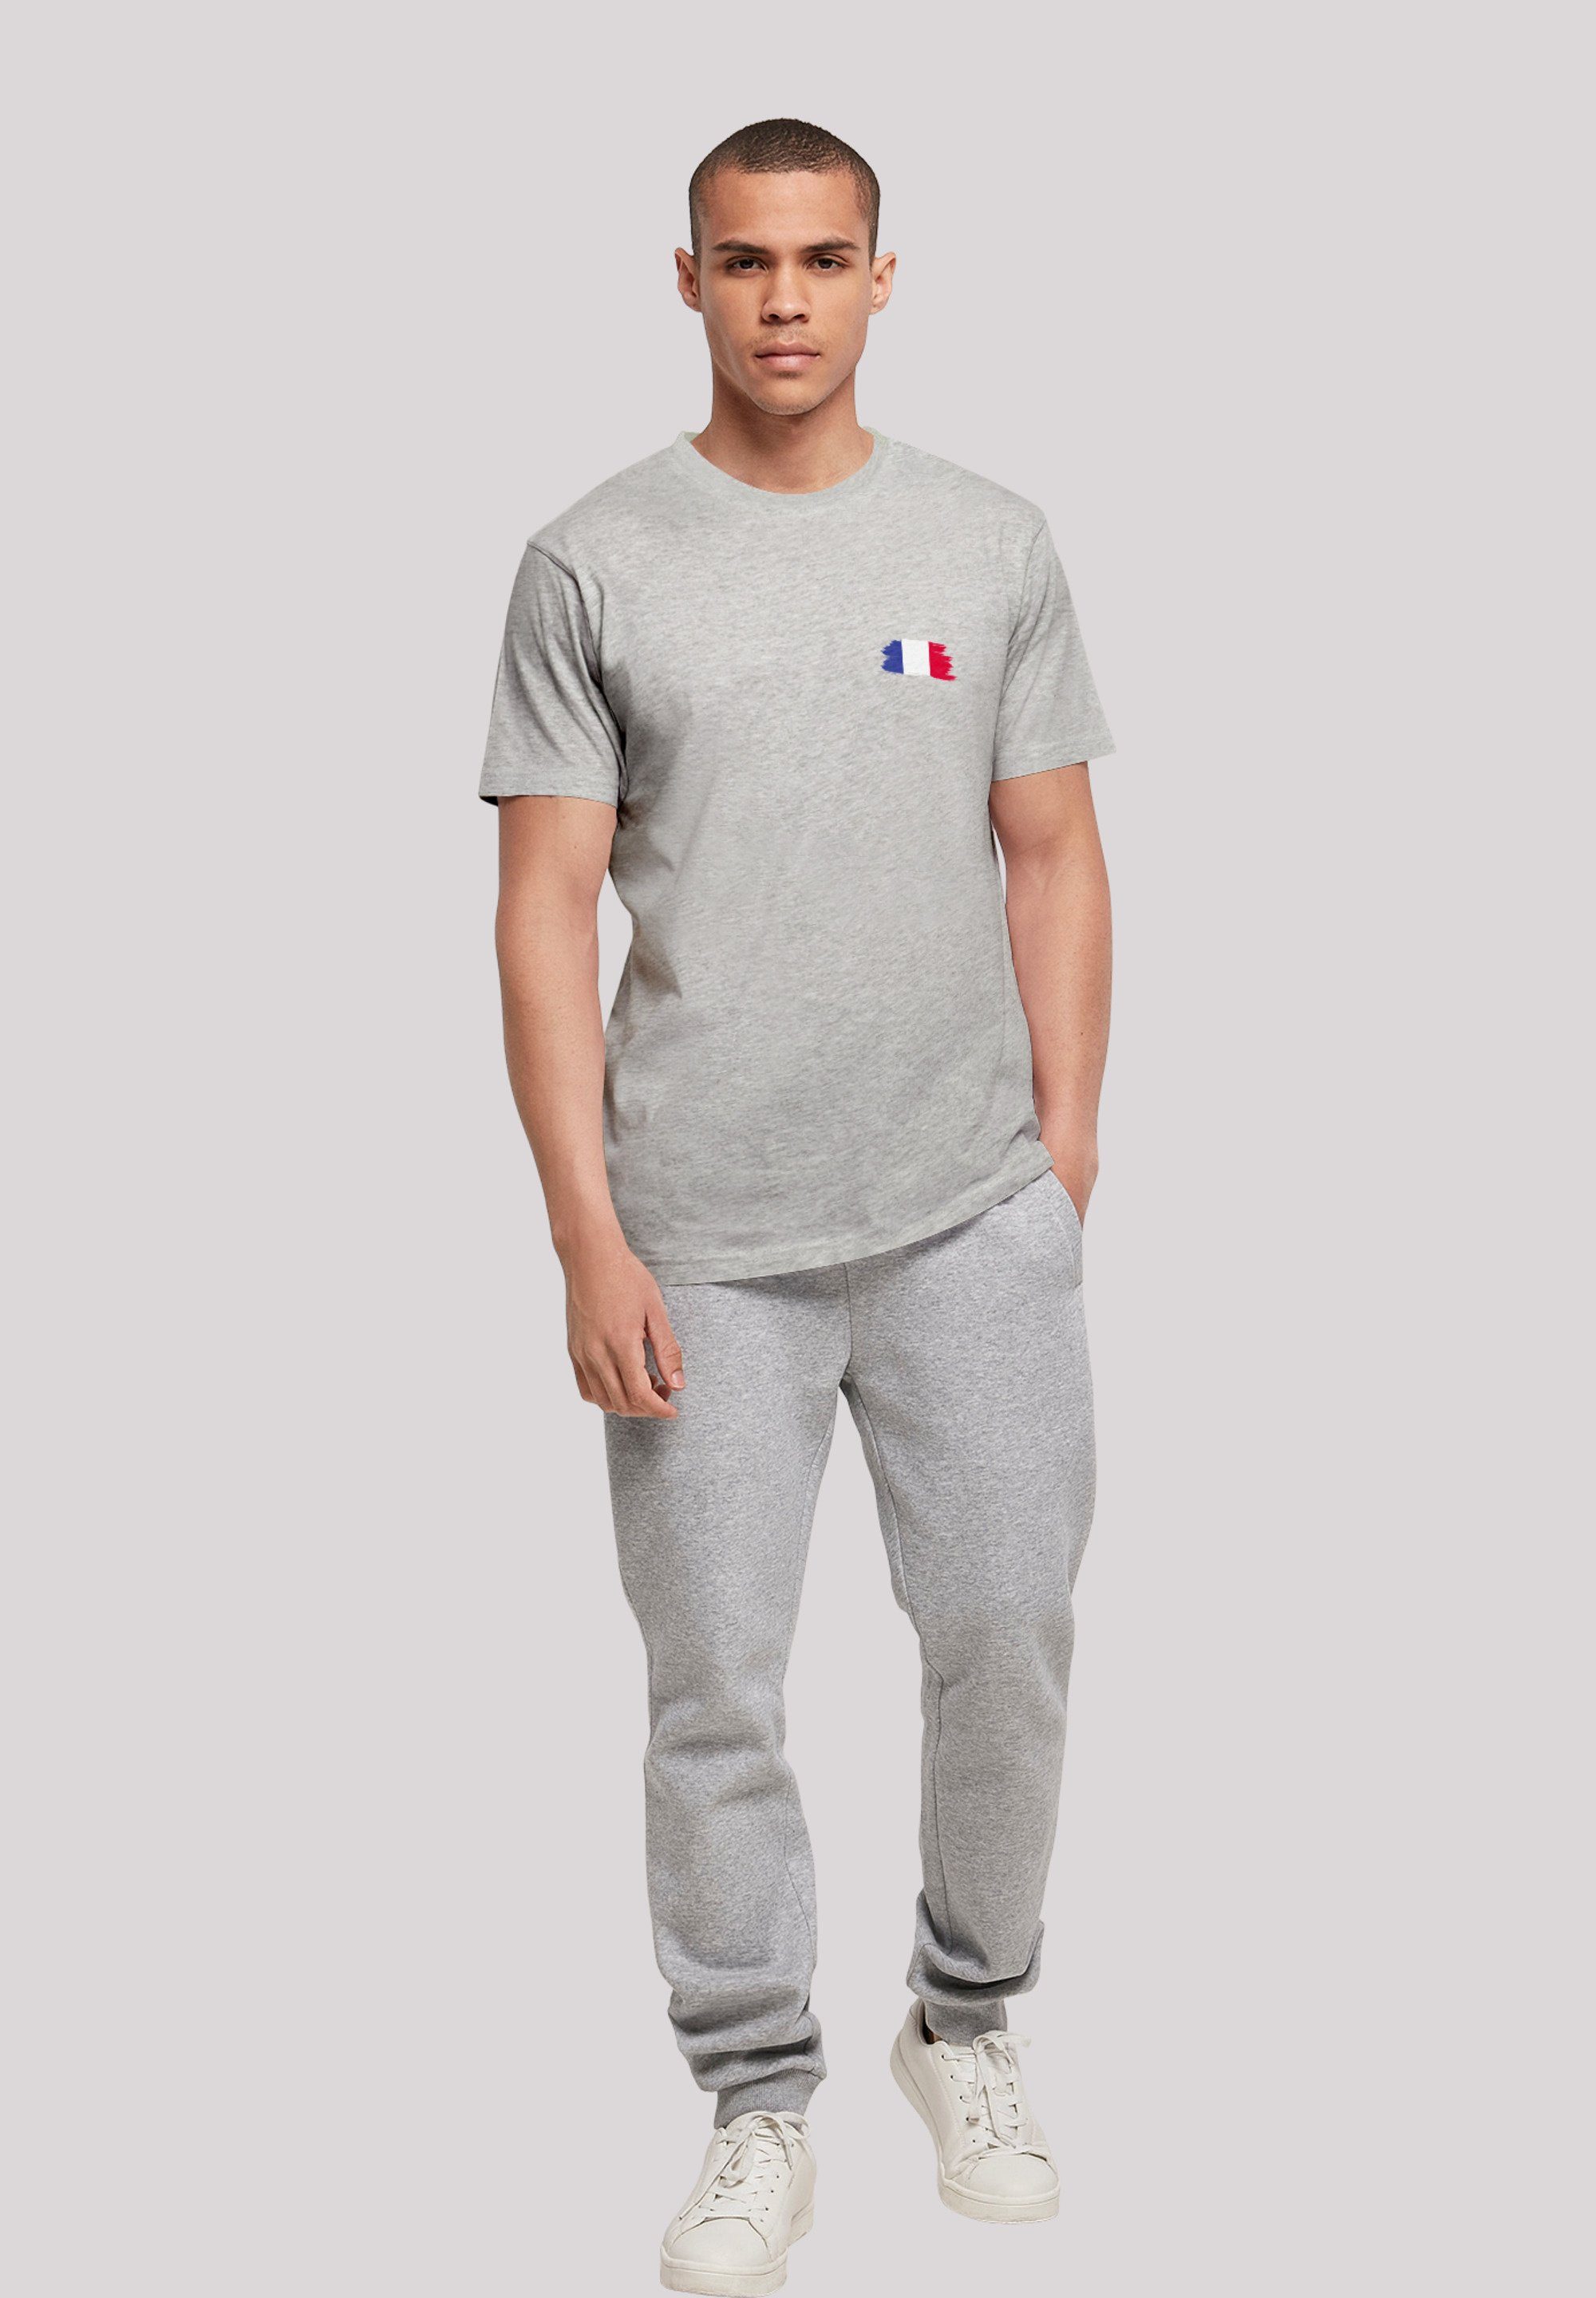 F4NT4STIC T-Shirt Frankreich Flagge France heather Print grey